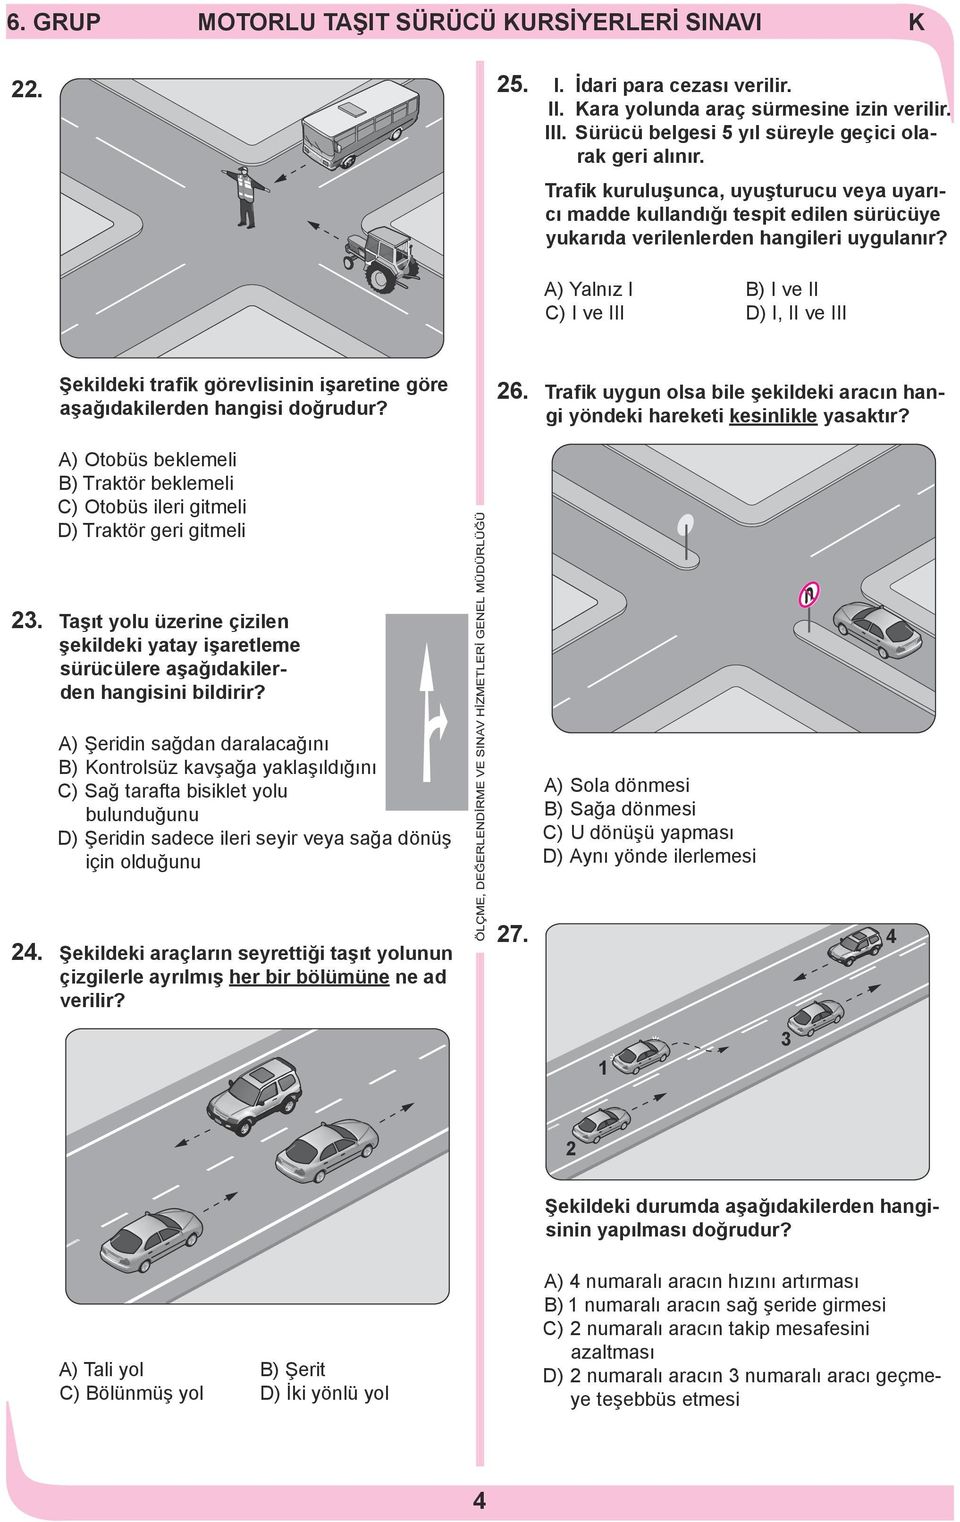 ) Yalnız I B) I ve II C) I ve III D) I, II ve III Şekildeki trafik görevlisinin işaretine göre aşağıdakilerden hangisi doğrudur? 26.